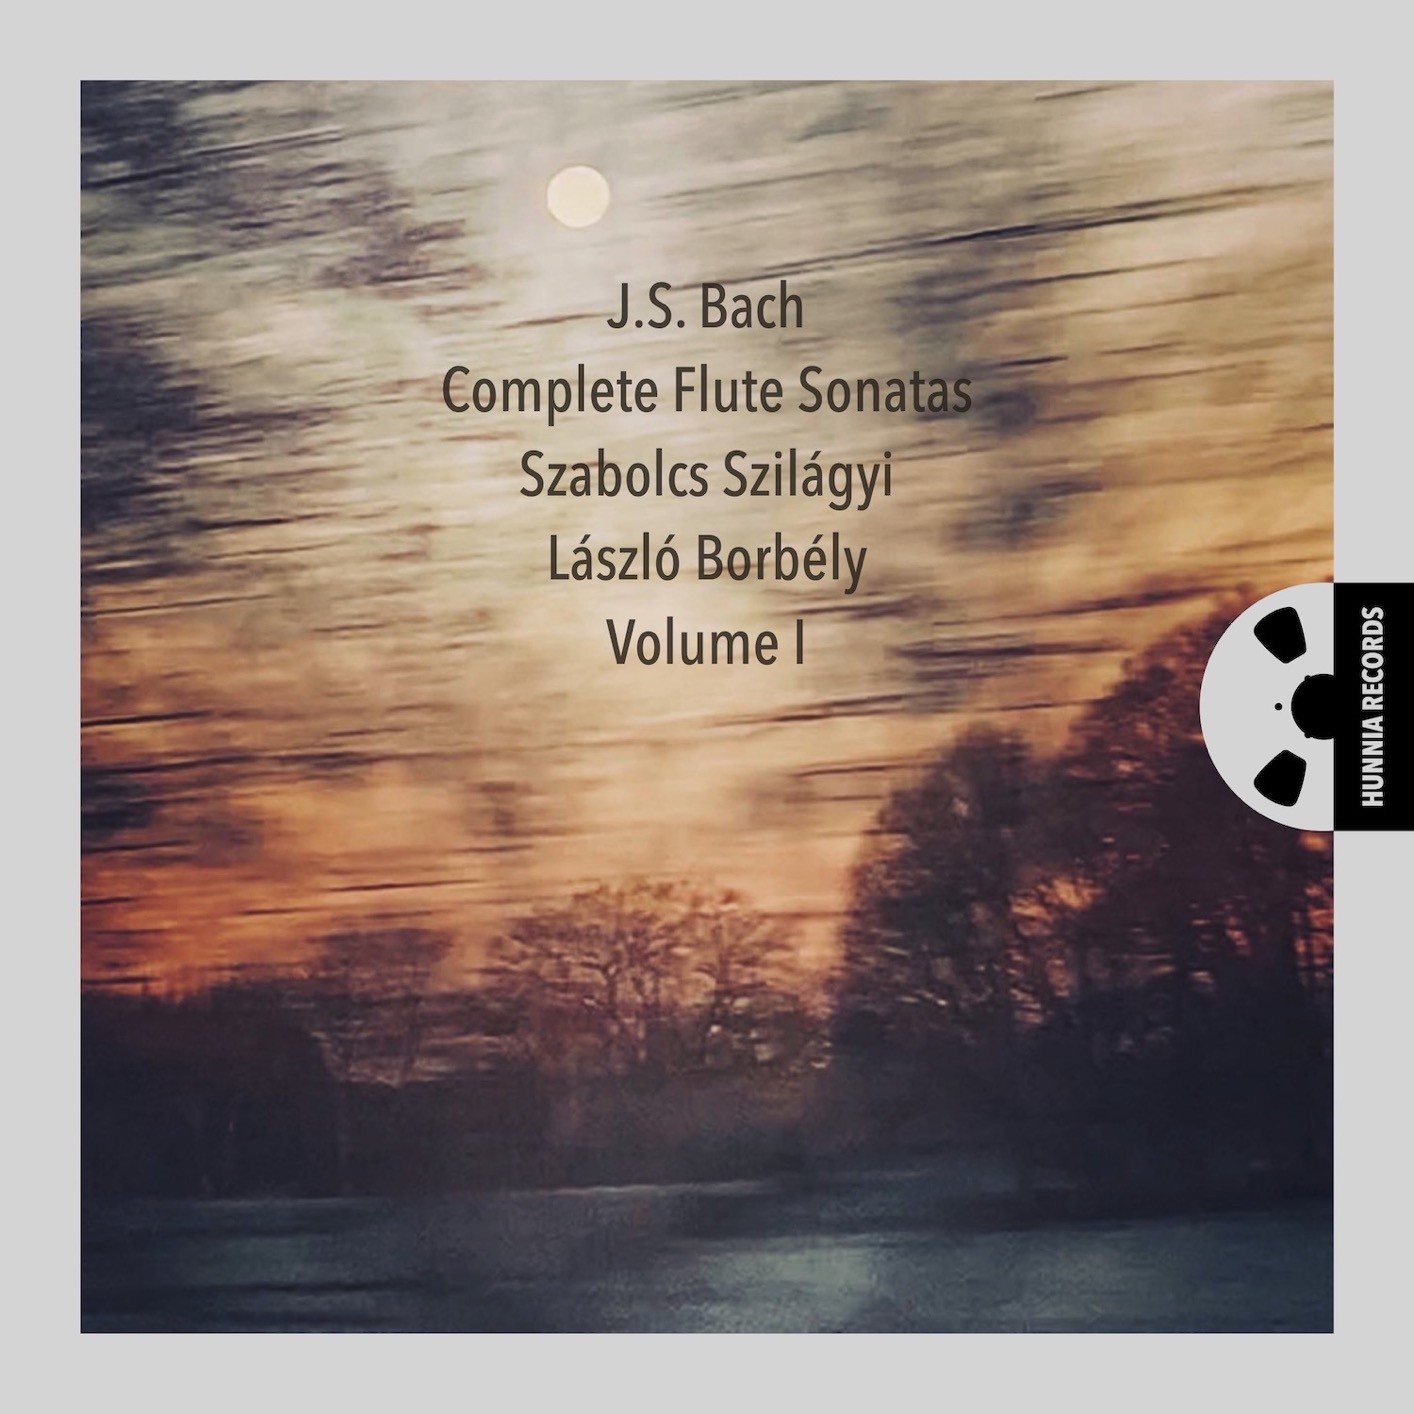 Szabolcs Szilagyi, Laszlo Borbely - Bach, Complete Flute Sonatas, Volume I (2023) [FLAC 24bit/192kHz] Download